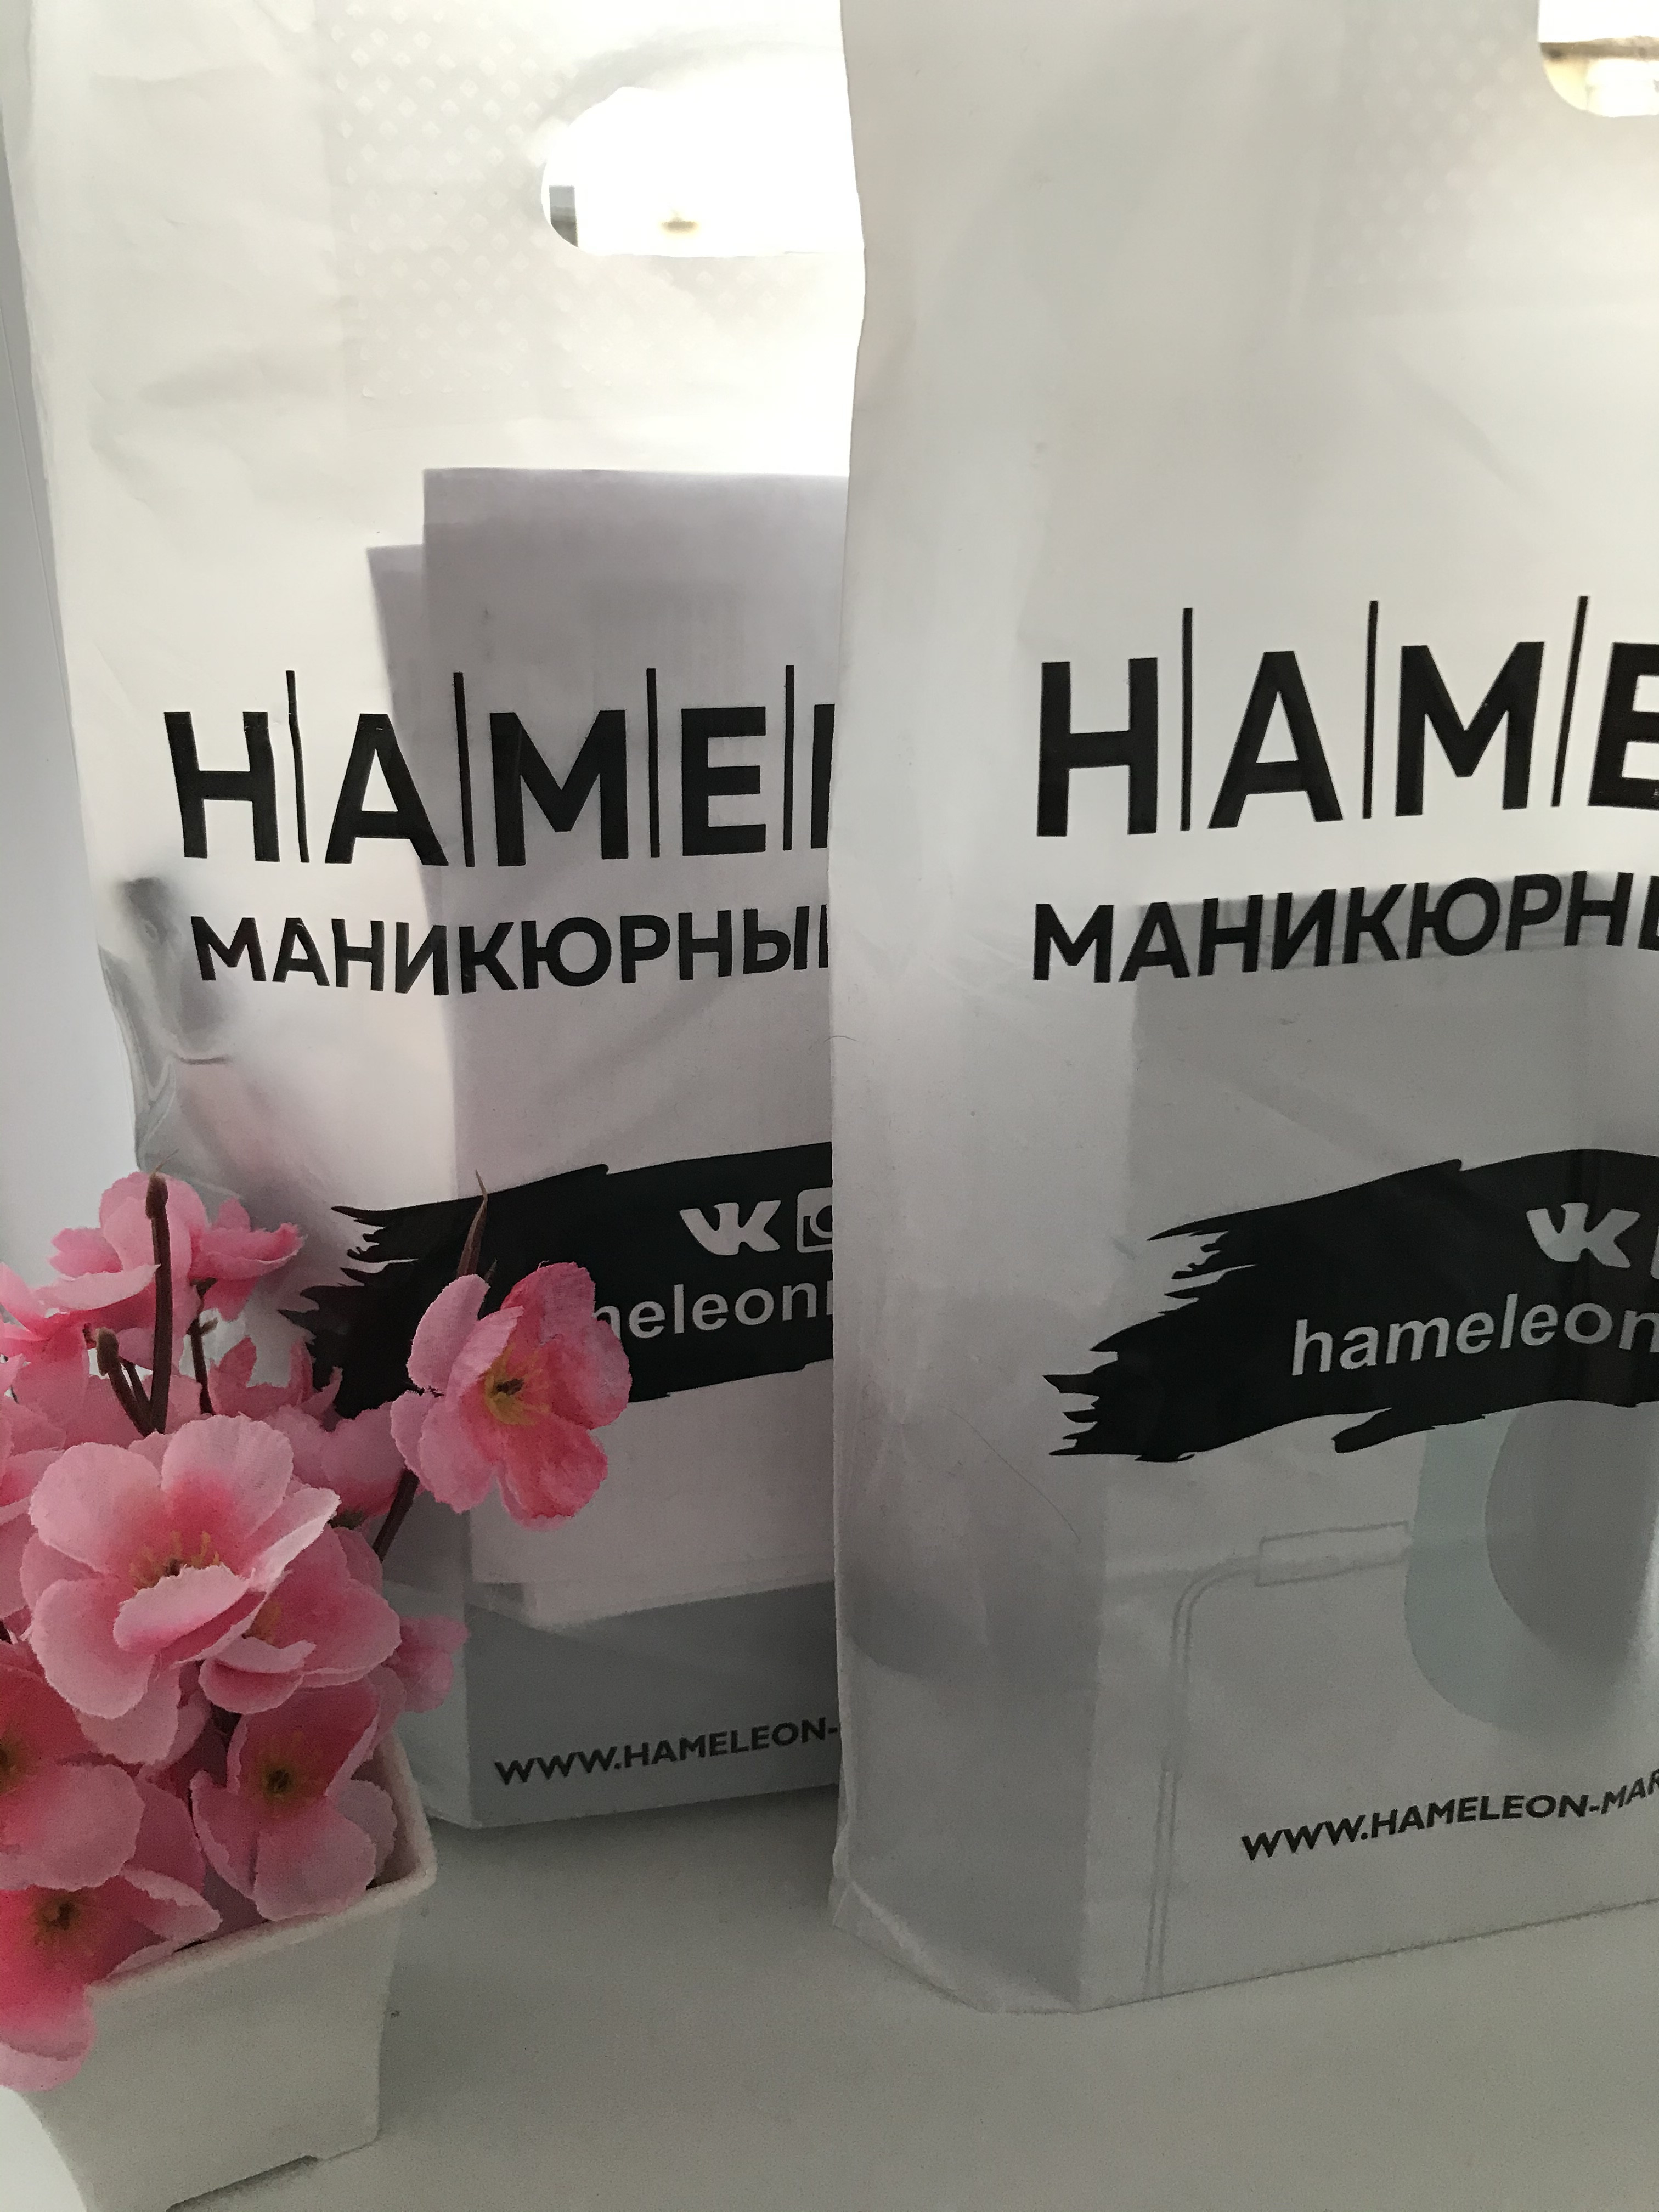 Хамелеон магазин новосибирск. Хамелеон маникюрный магазин Новосибирск. Магазин хамелеон Новосибирск каталог товаров.